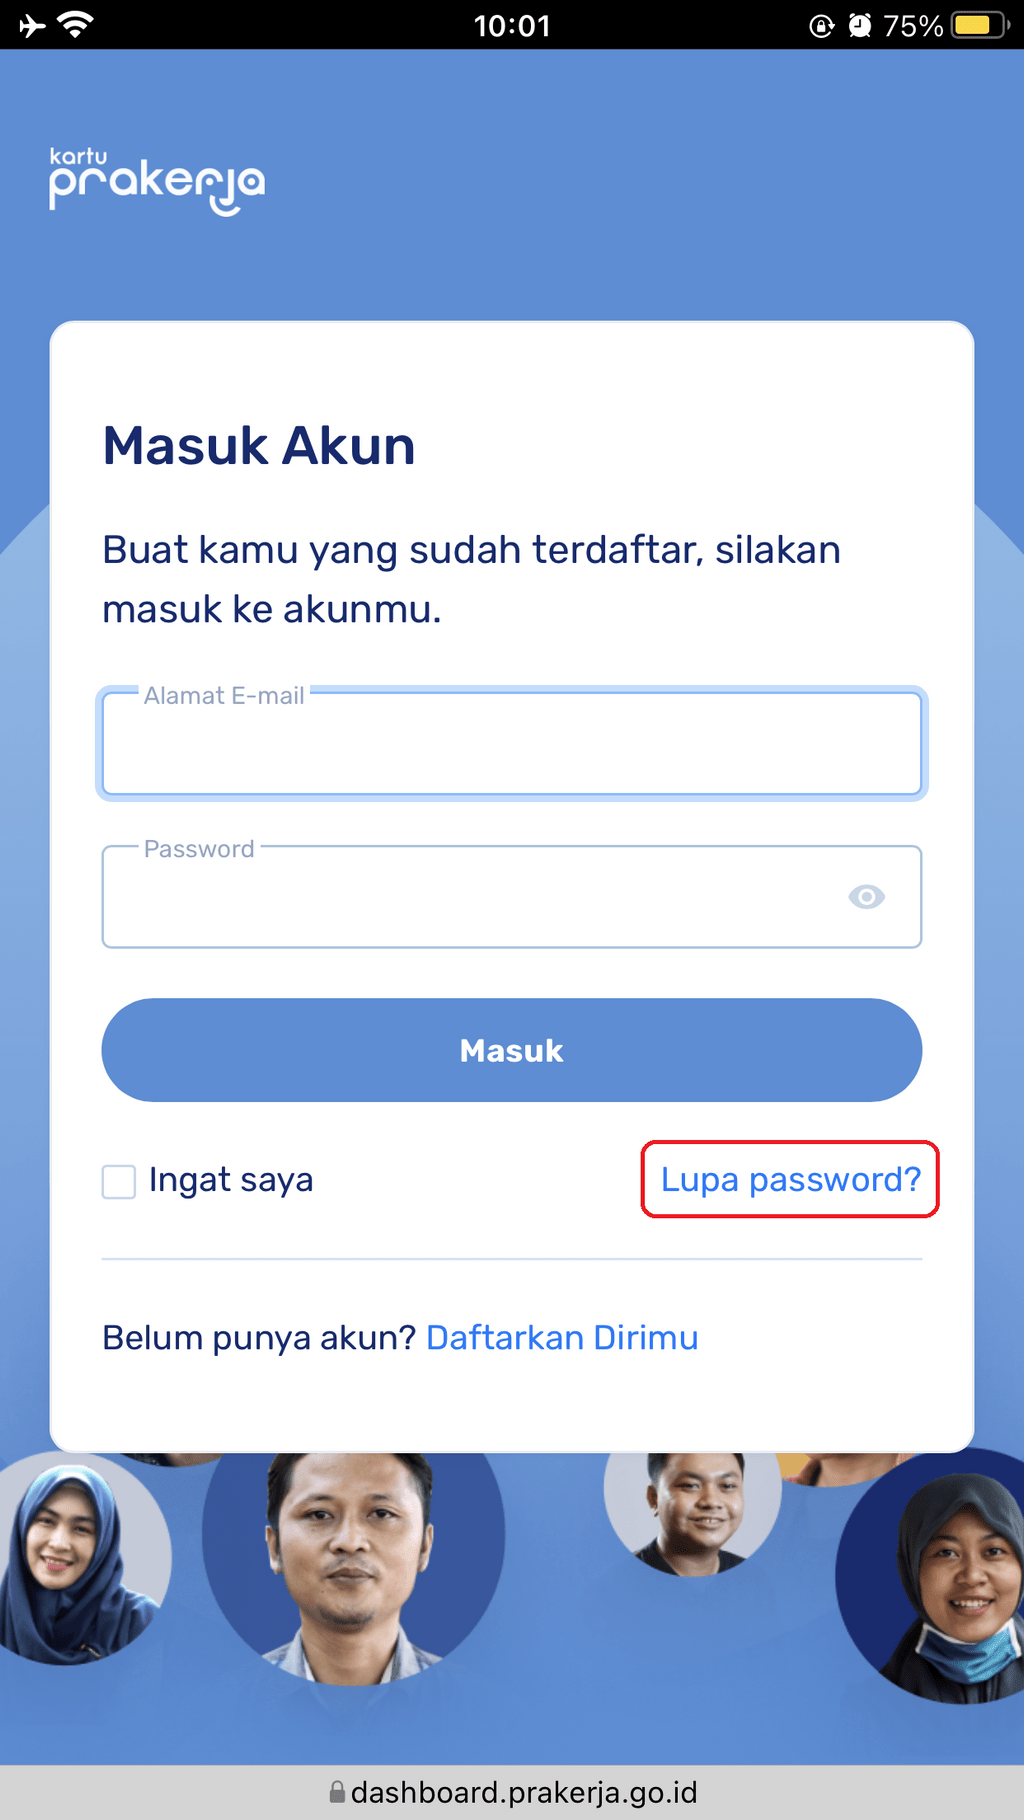 klik lupa password